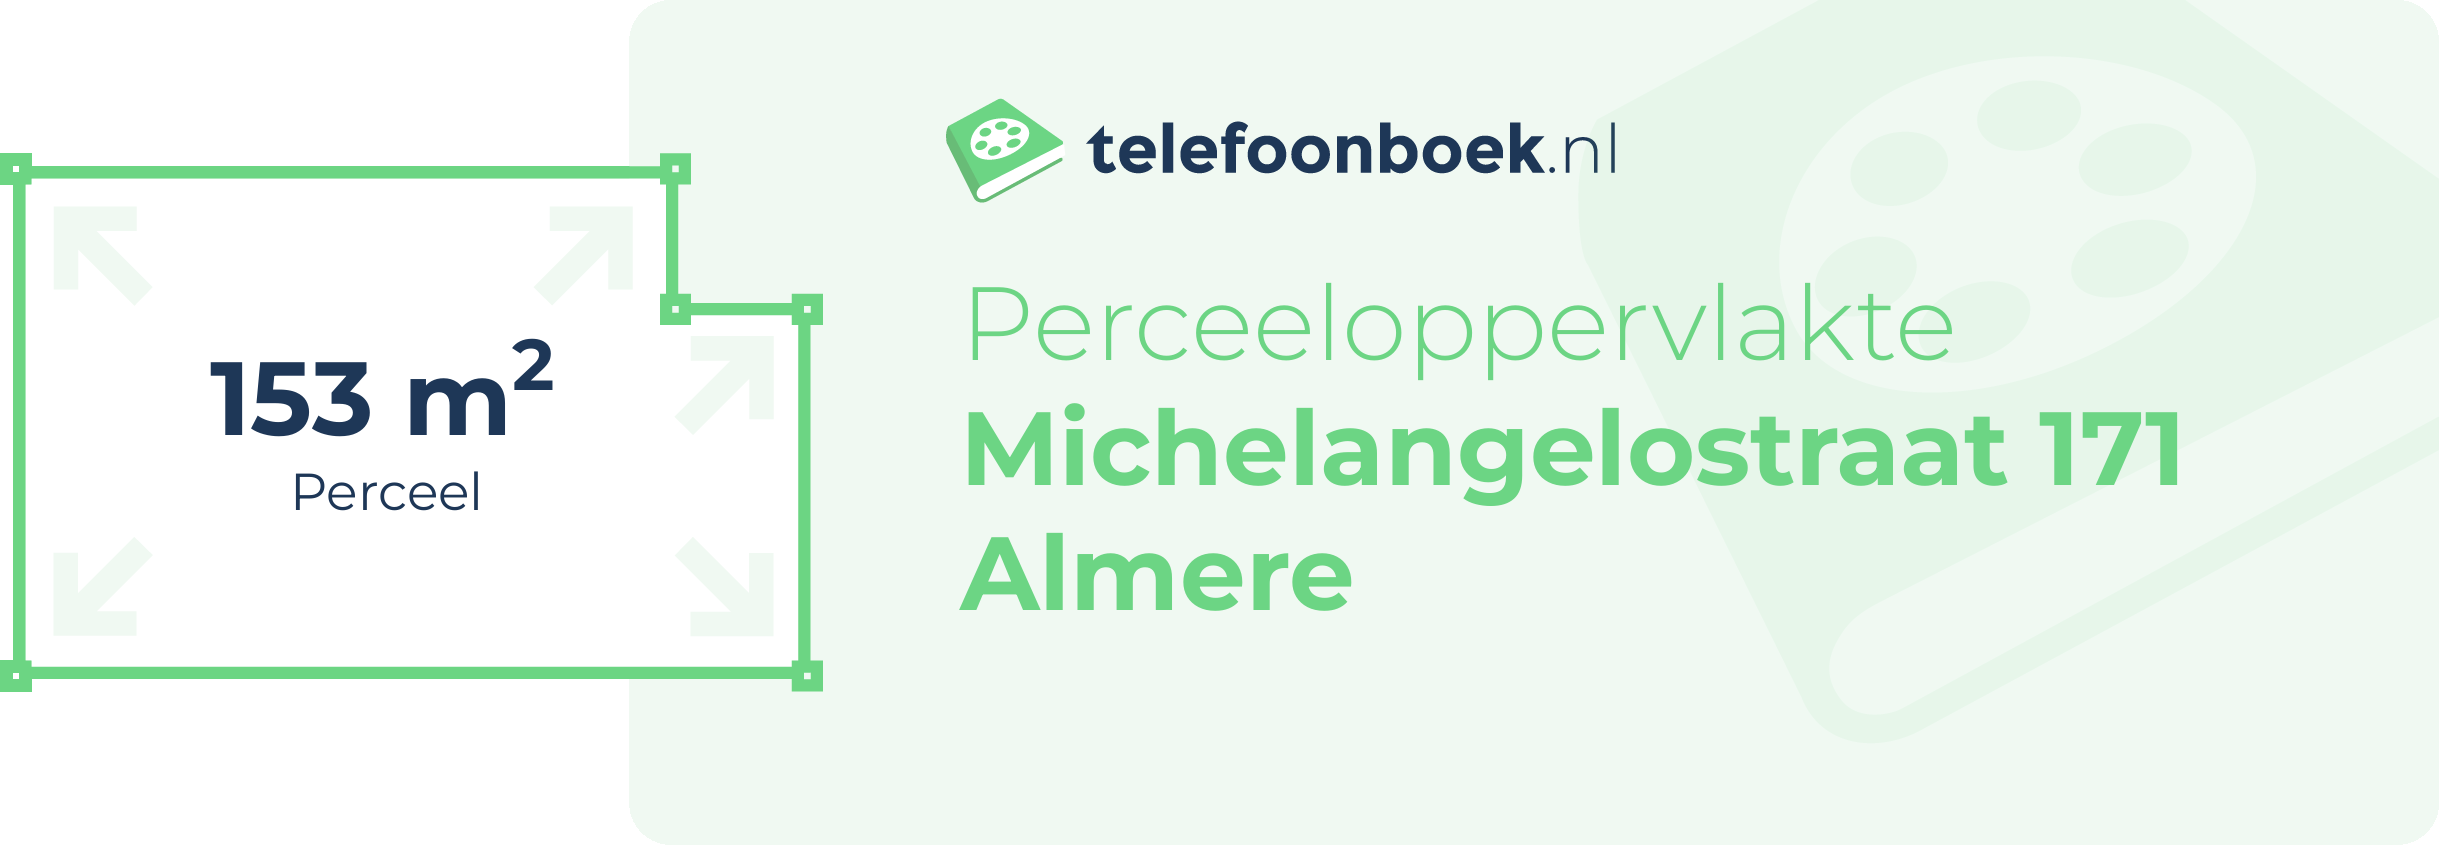 Perceeloppervlakte Michelangelostraat 171 Almere